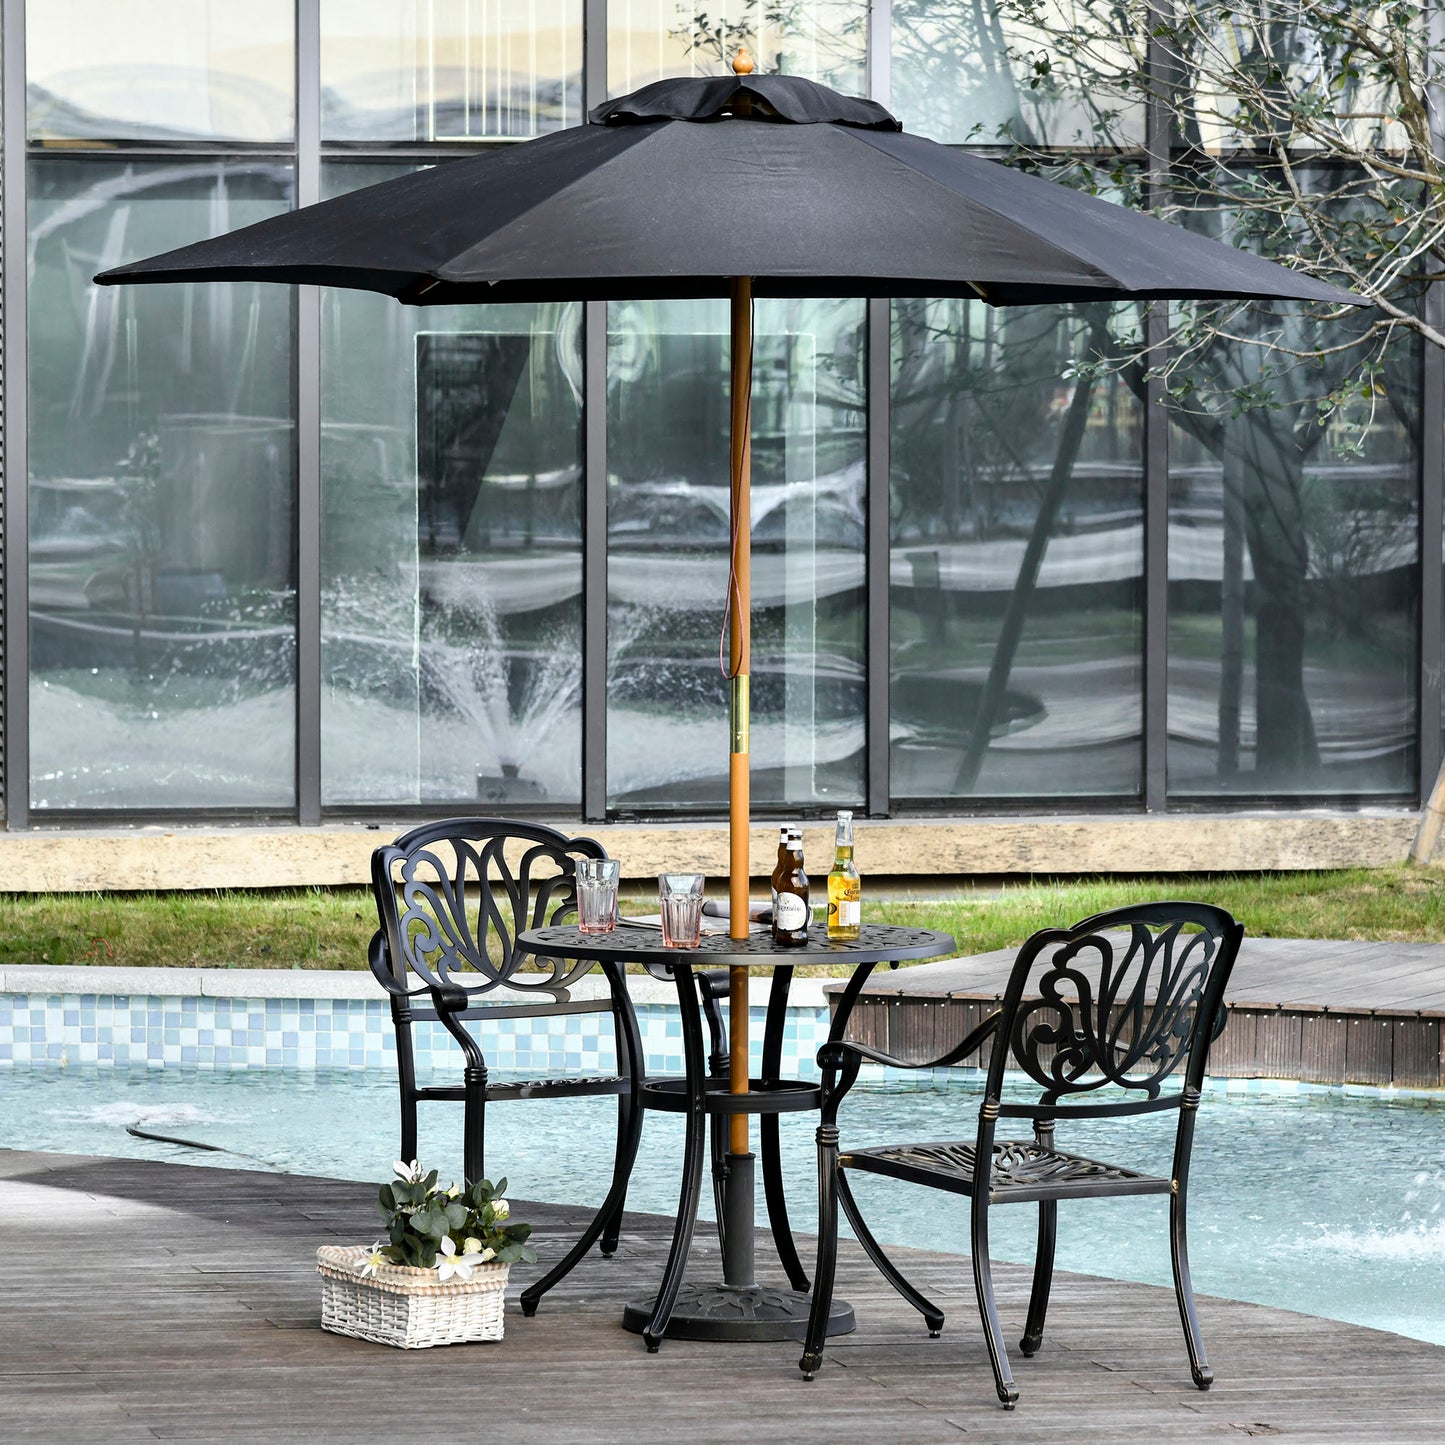 Outsunny 2.5m Wood Garden Parasol Sun Shade Patio Outdoor Wooden Umbrella Canopy Teak